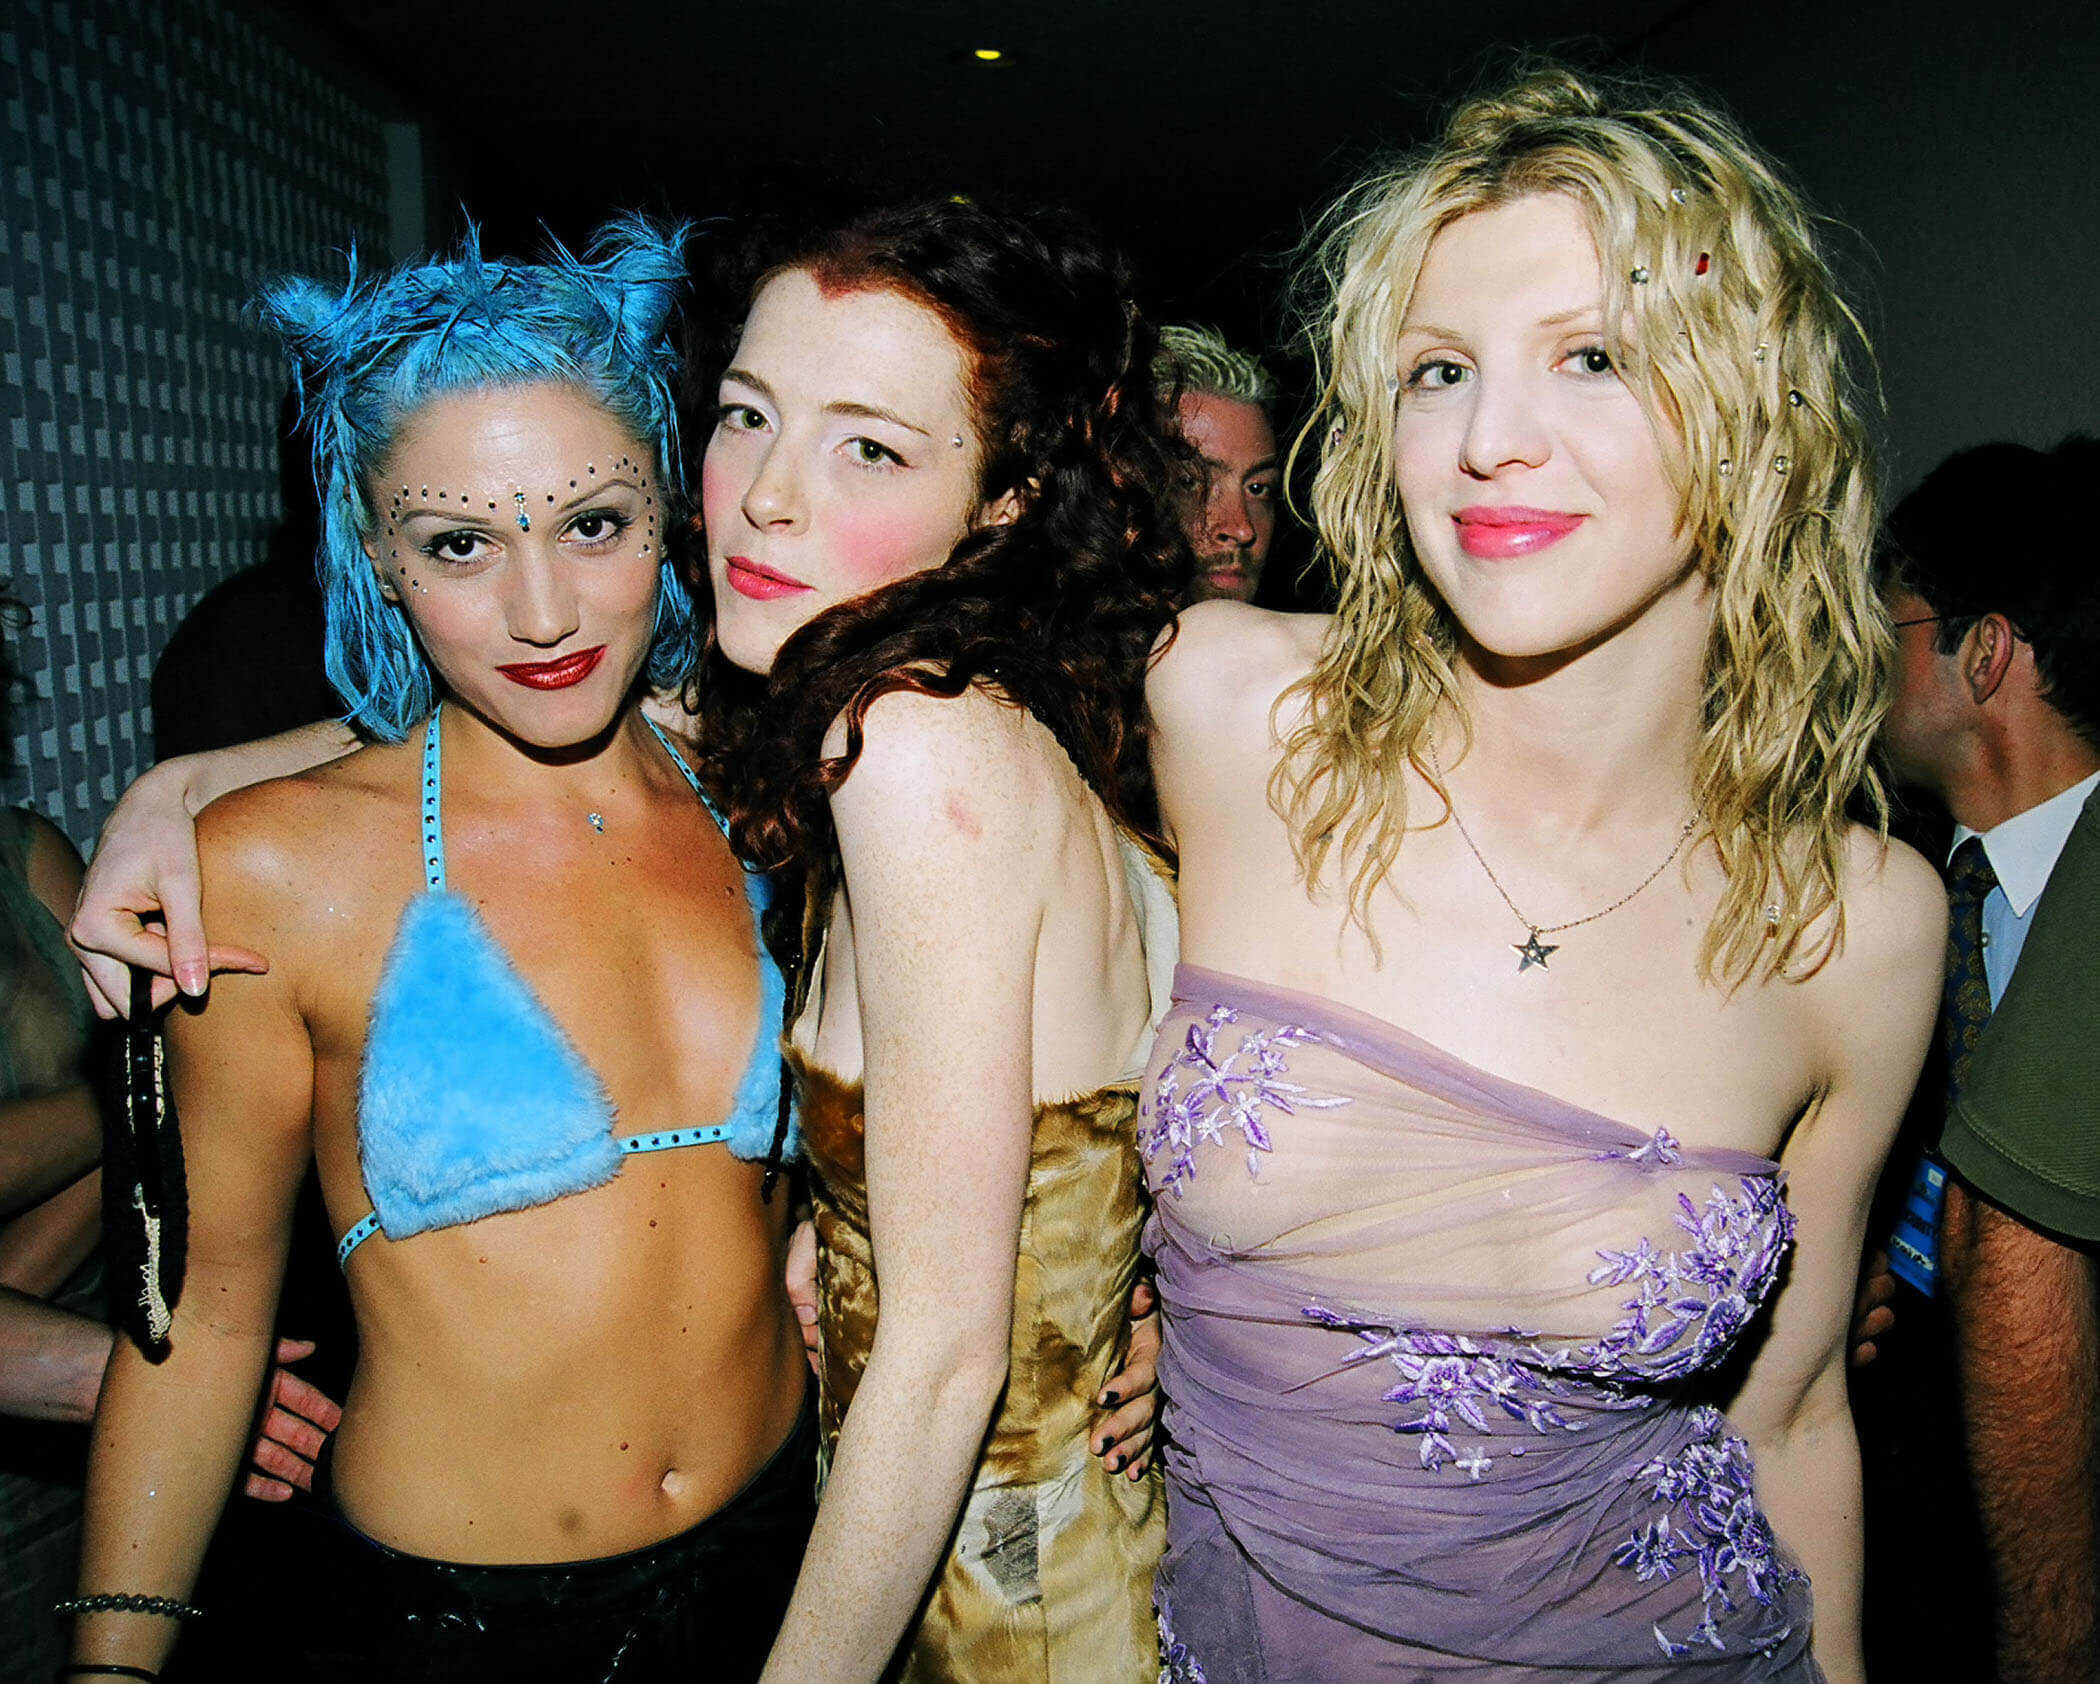 Gwen Stefani, Melissa Auf der Maur, and  Courtney Love wearing revealing clothing in 1998